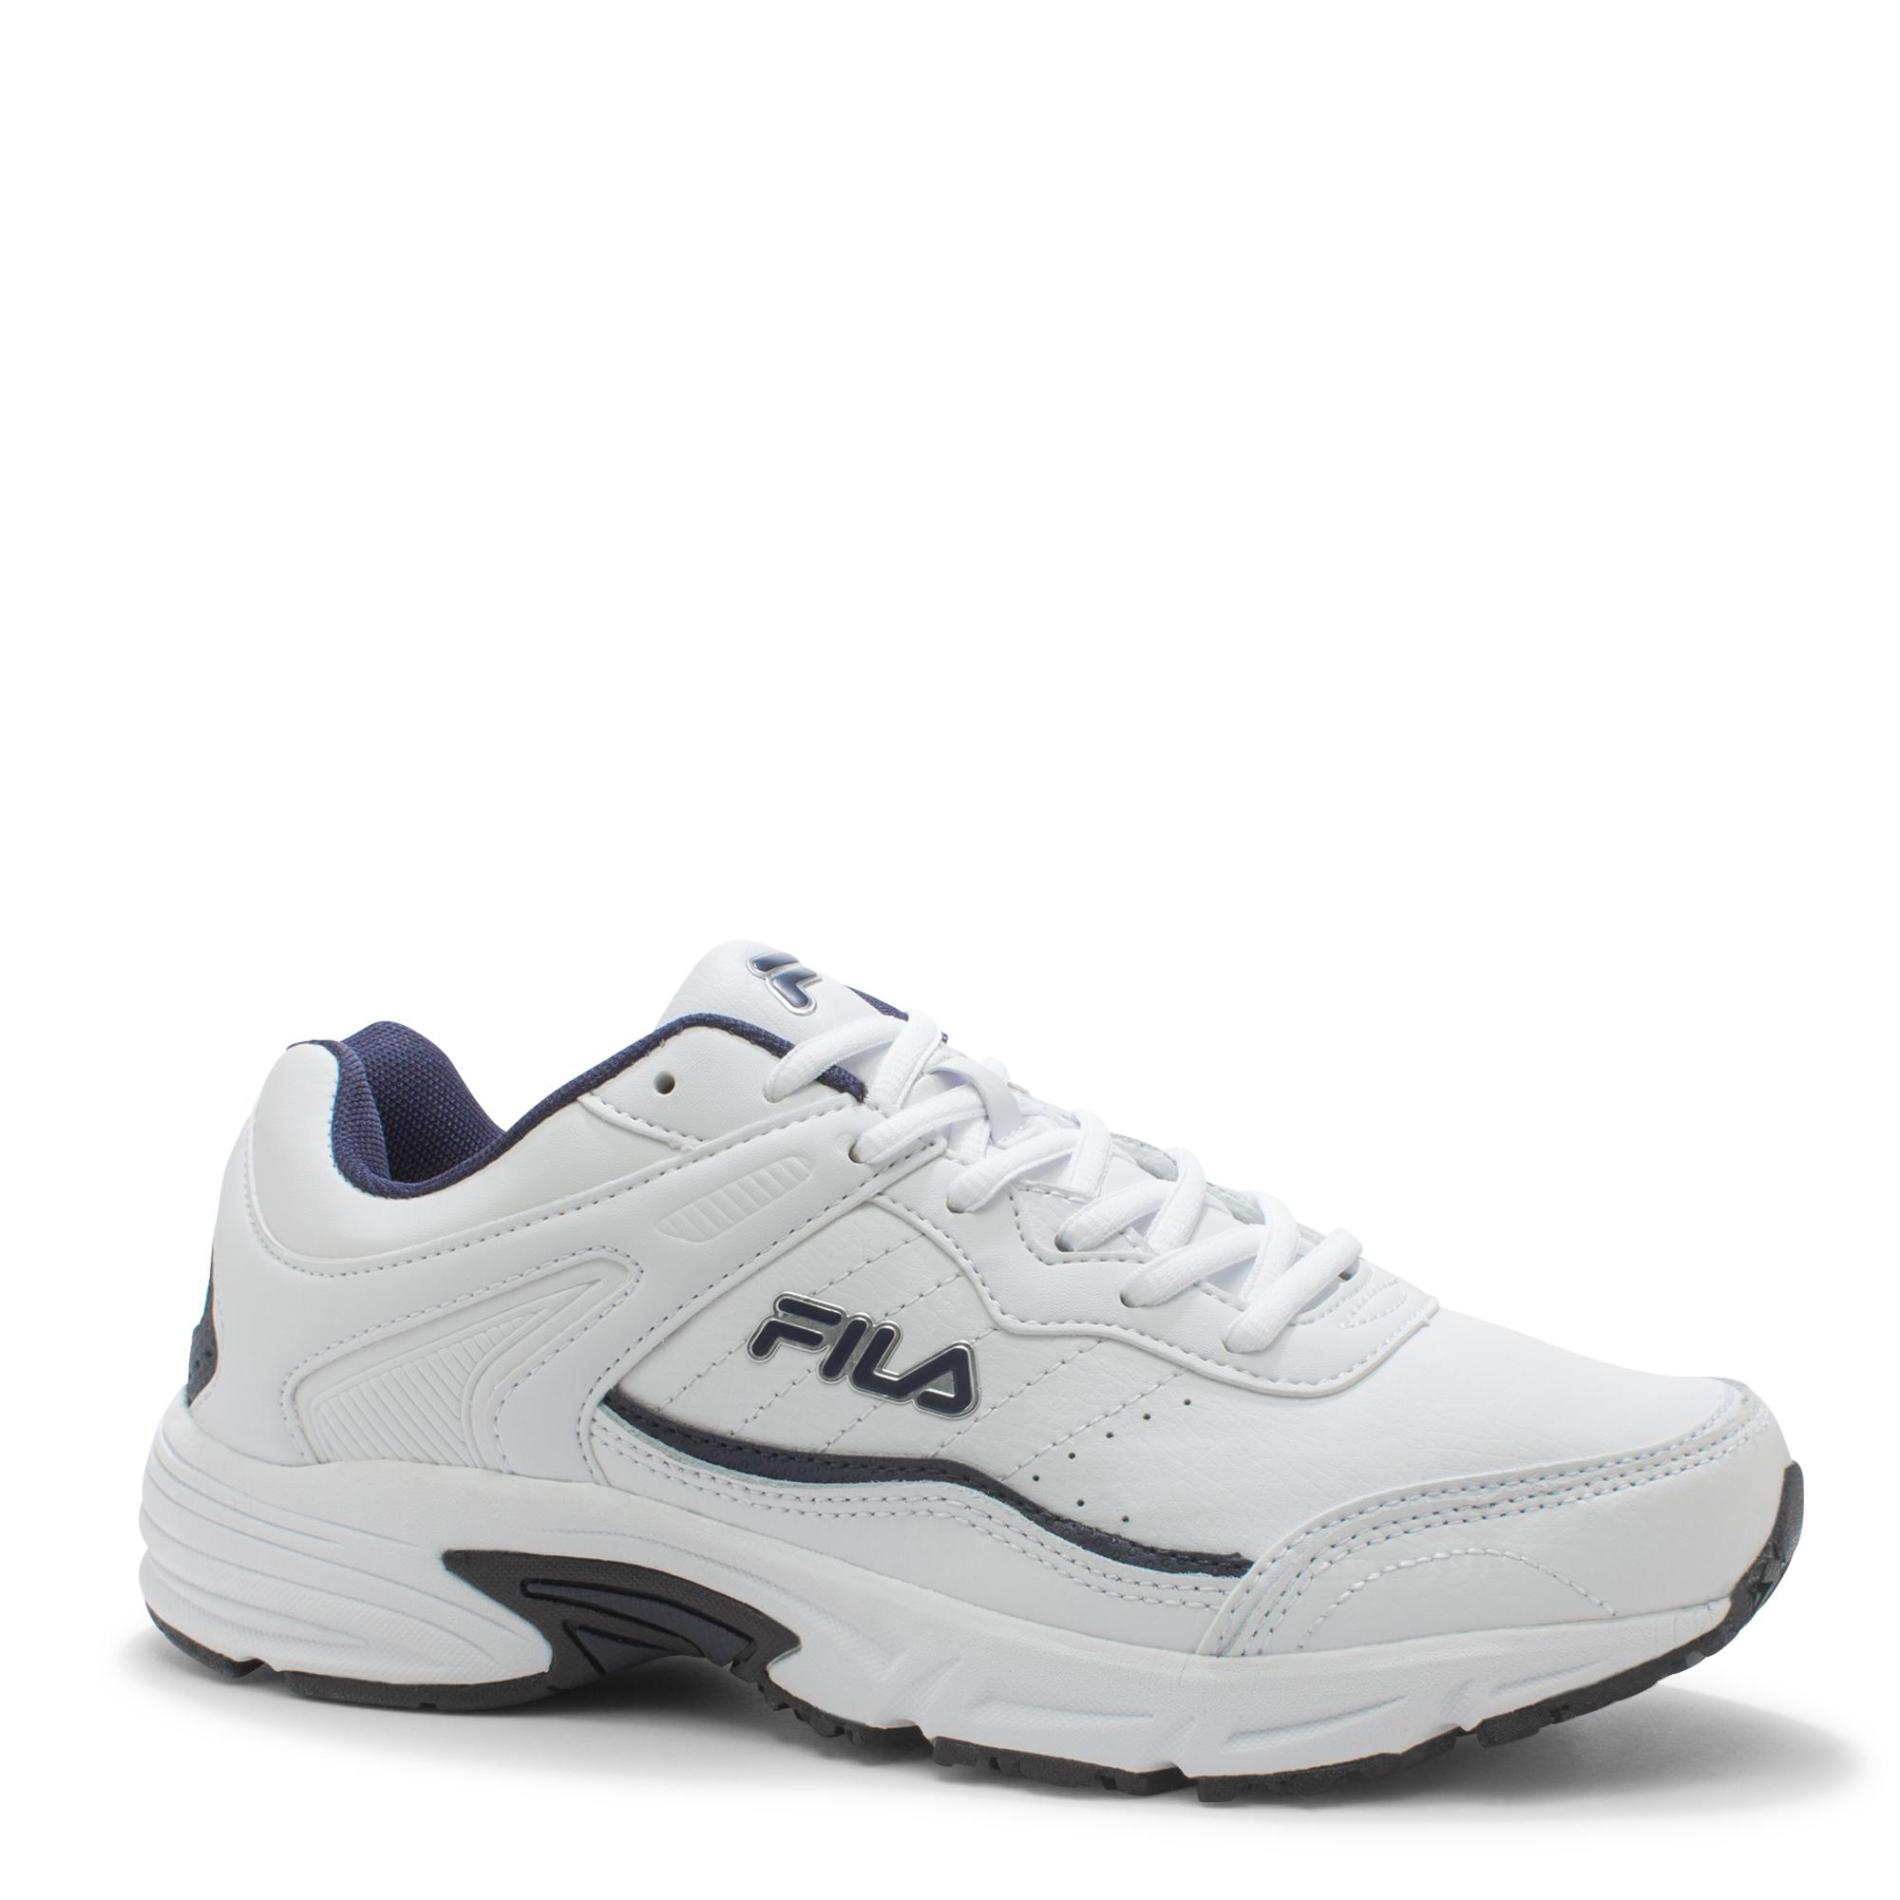 Fila Men's Memory Sportland Athletic Shoe - White/Navy Wide Width Avail